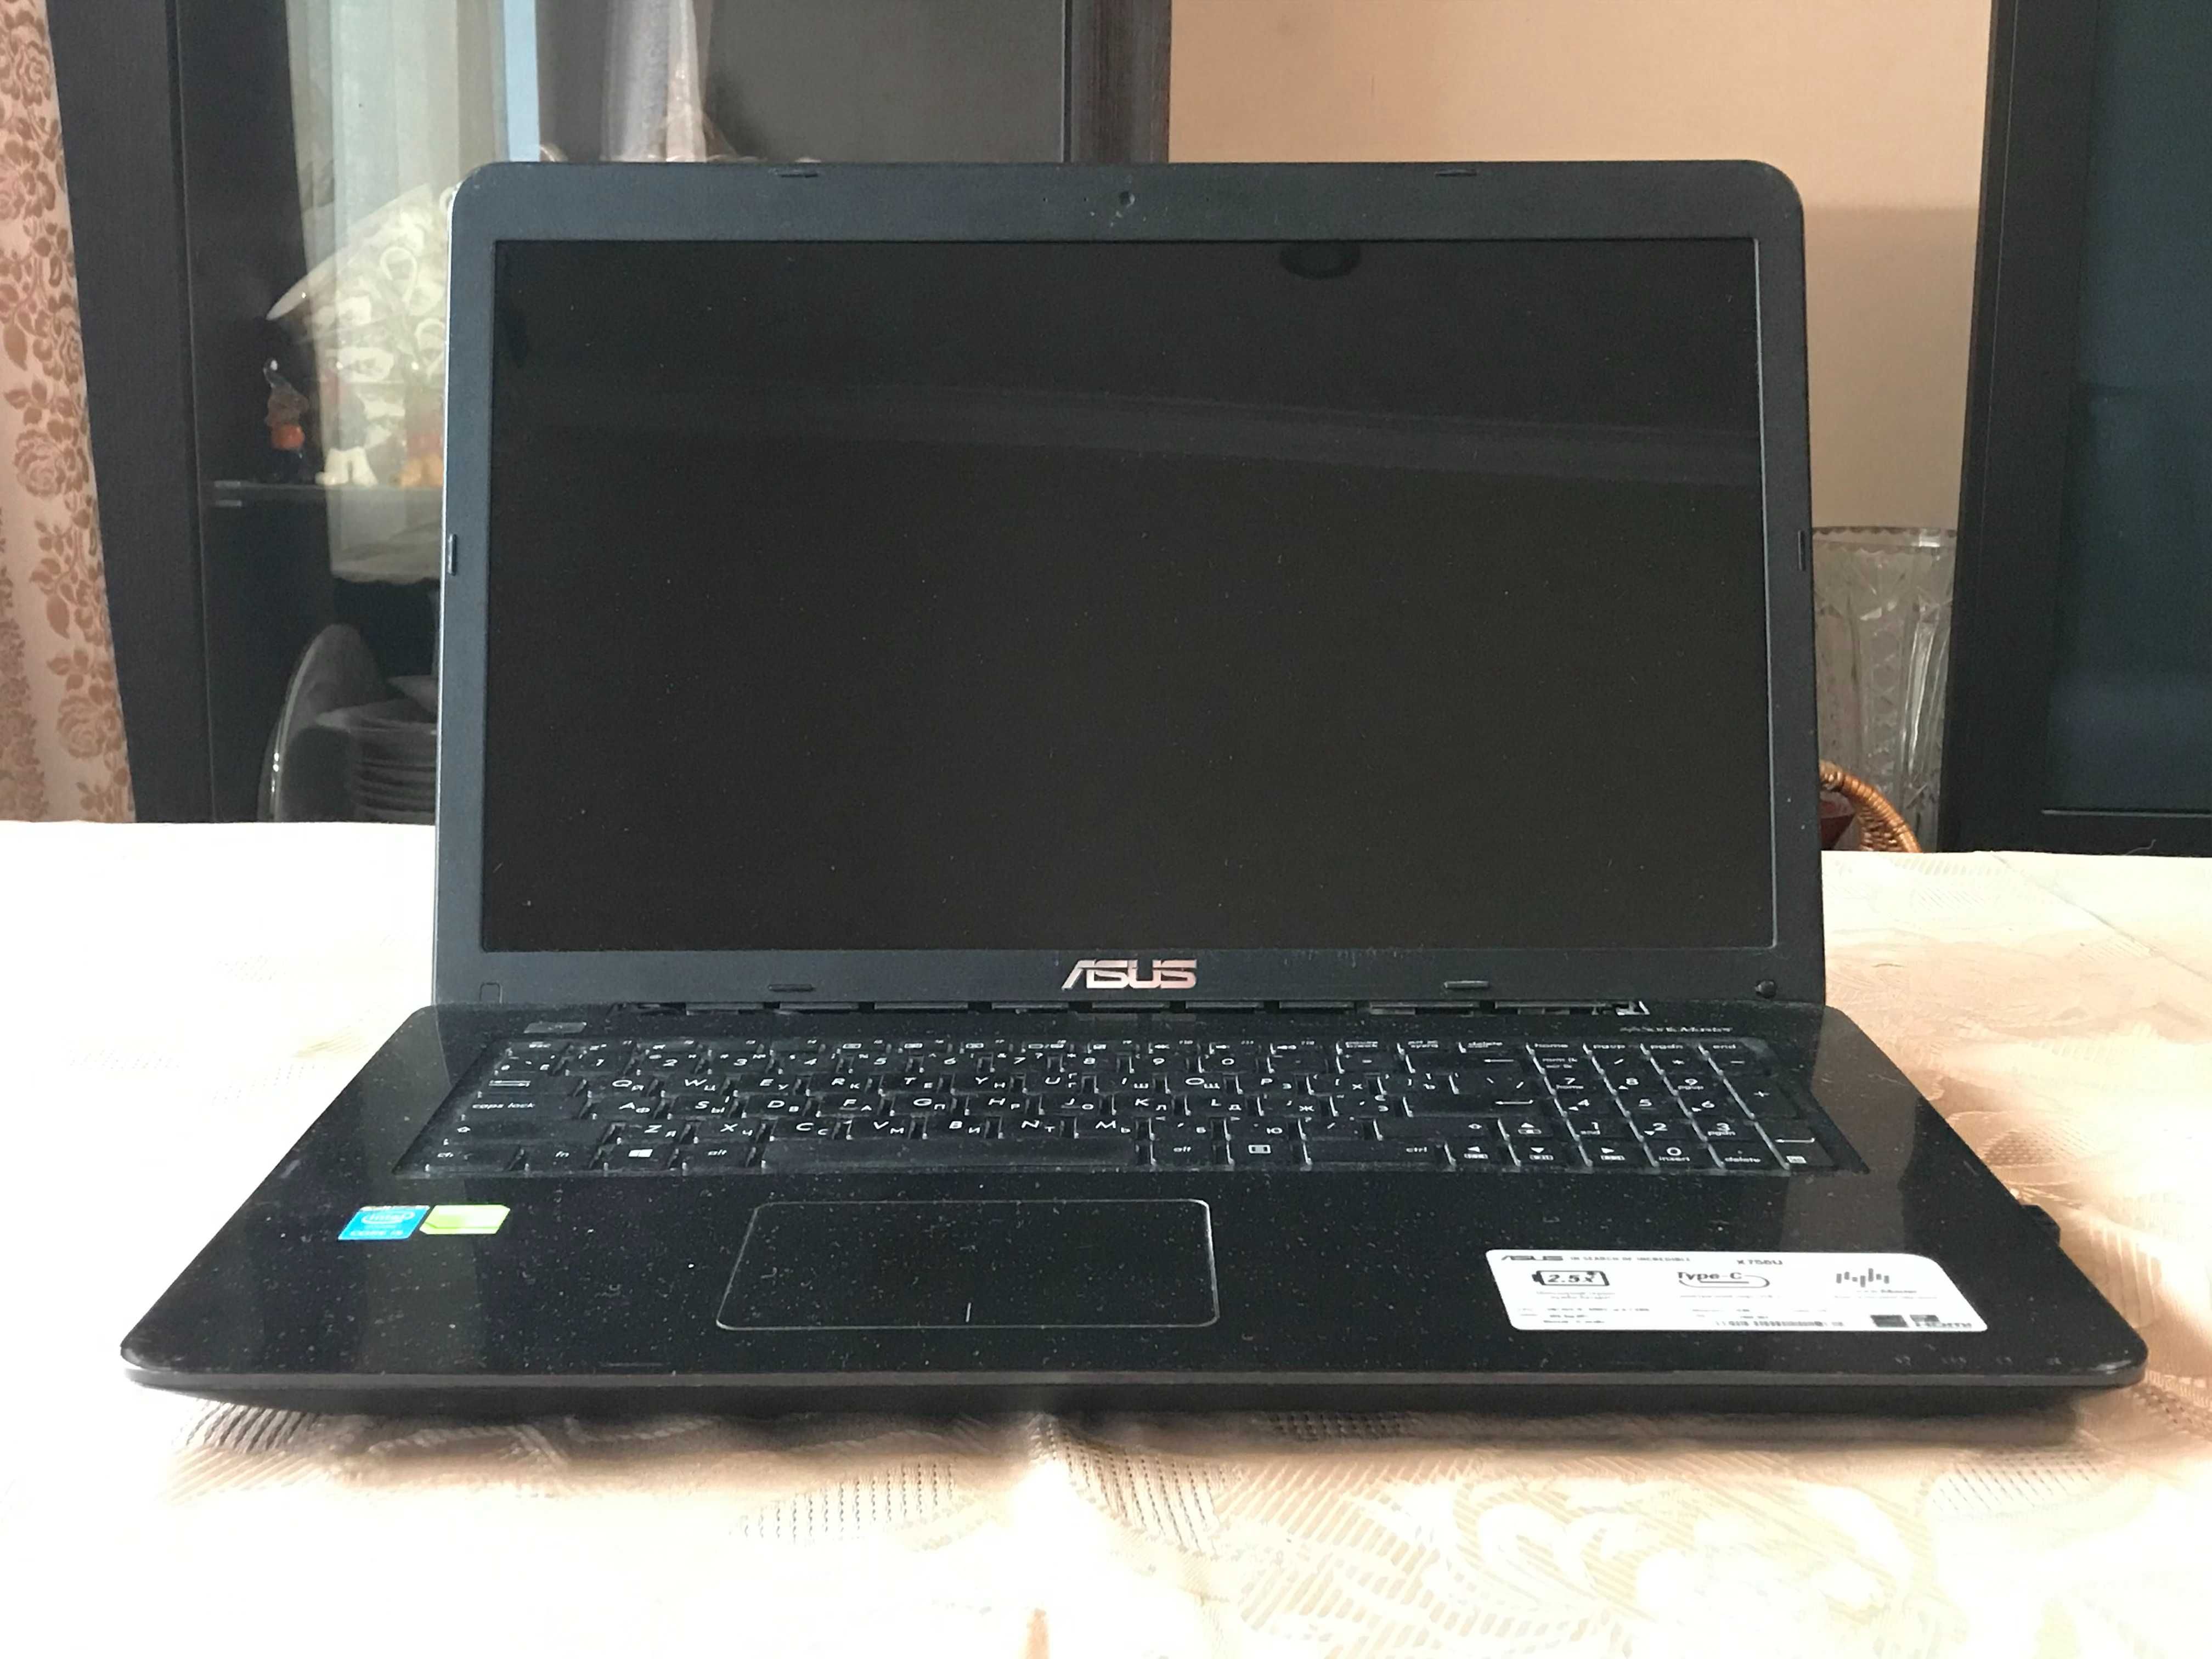 Ноутбук Asus X756U: 17.3 Full HD/i5 6200/Nvidia 2 гб/ОЗУ 12гб/SSD